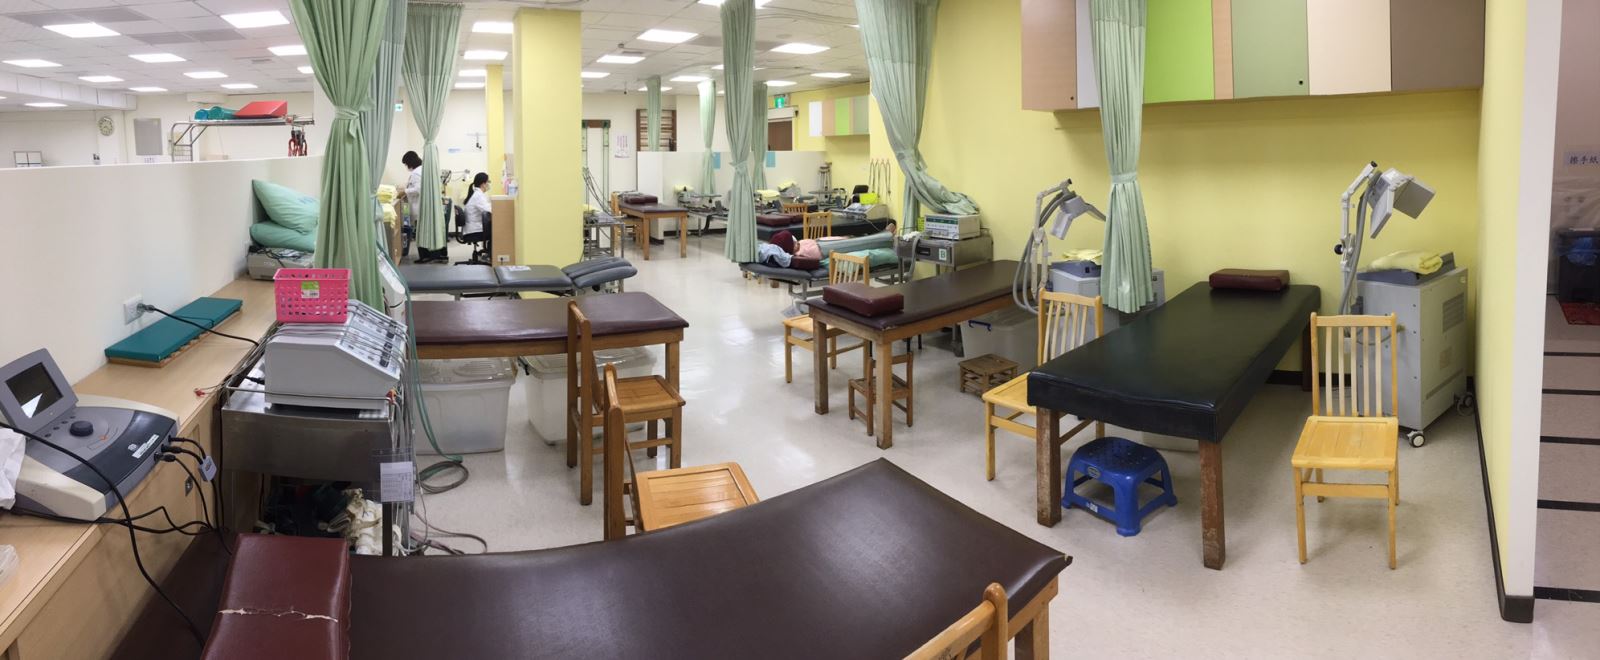 本科電療室具有各式最新治療儀器及設備